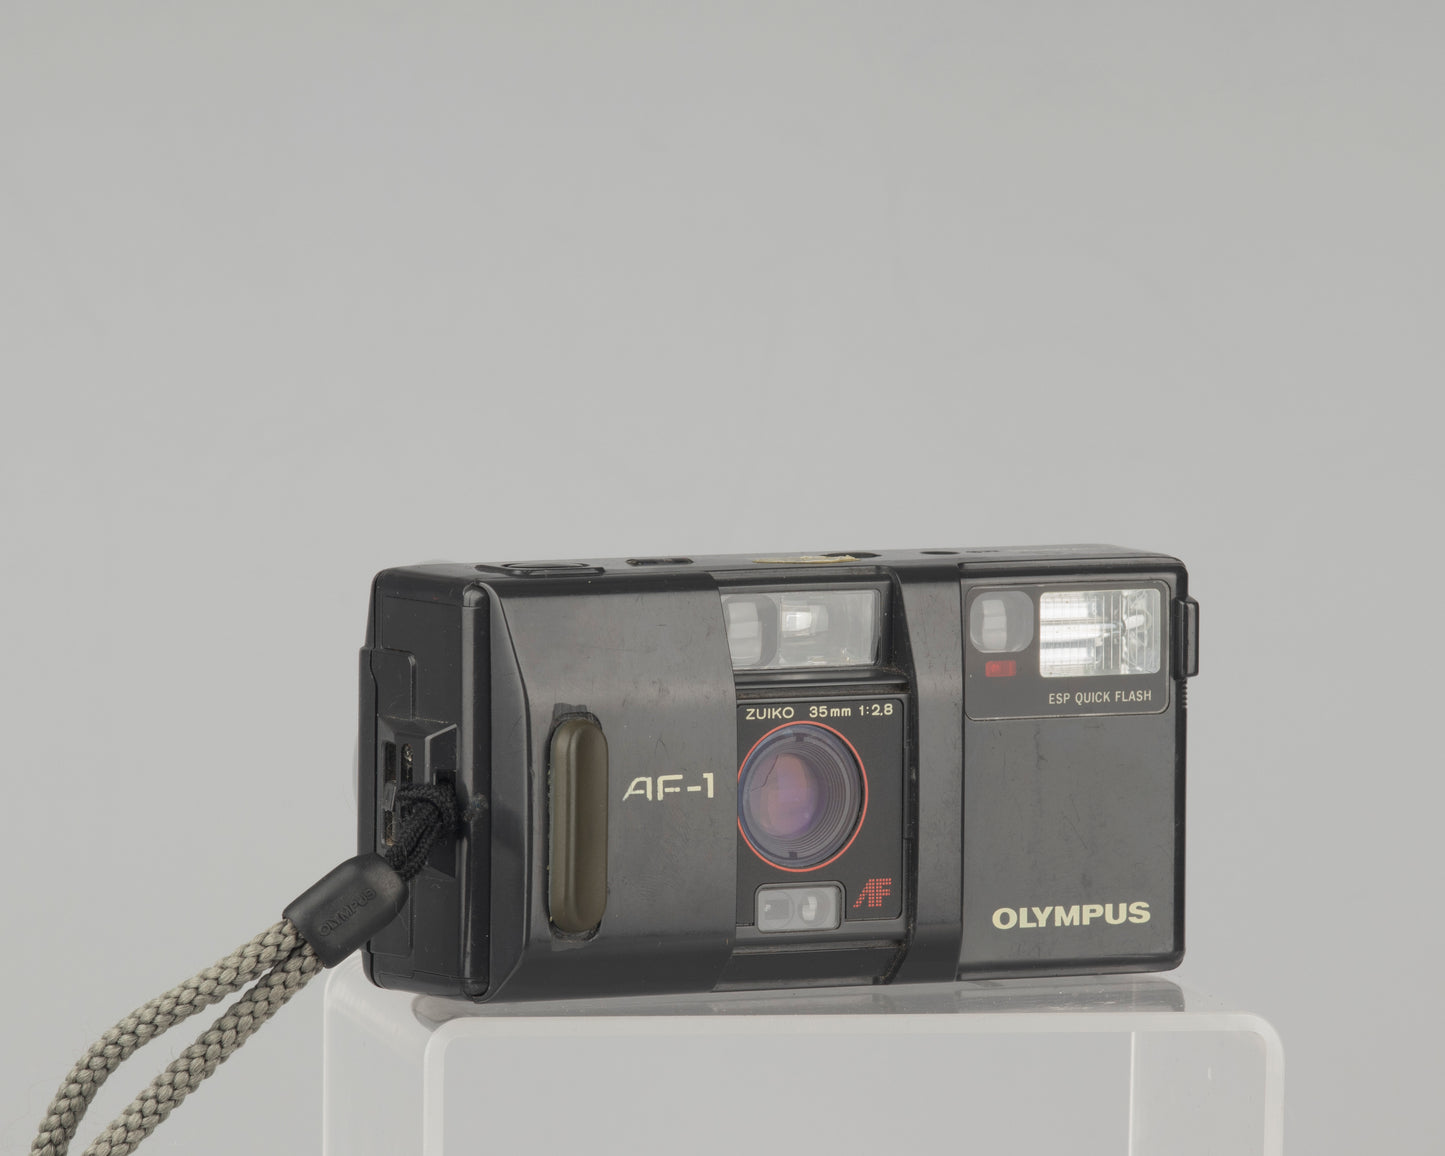 Olympus AF-1 (aka Infinity) 35mm film camera